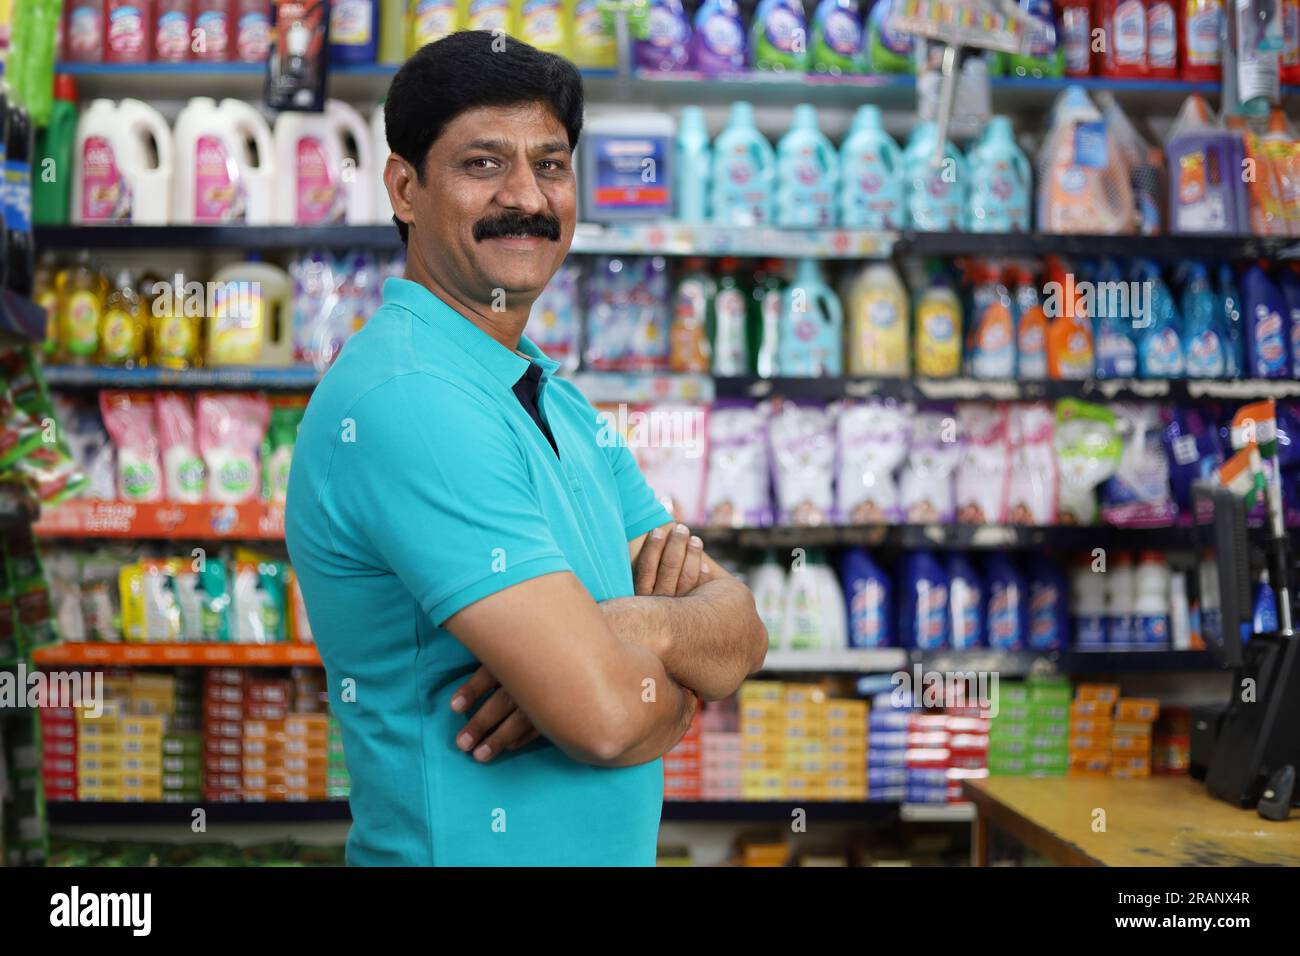 Ritratto di un uomo indiano felice e sorridente che acquista in un negozio di alimentari. Comprare della spesa per casa in un supermercato. Uomo sicuro e in forma nei baffi. Foto Stock